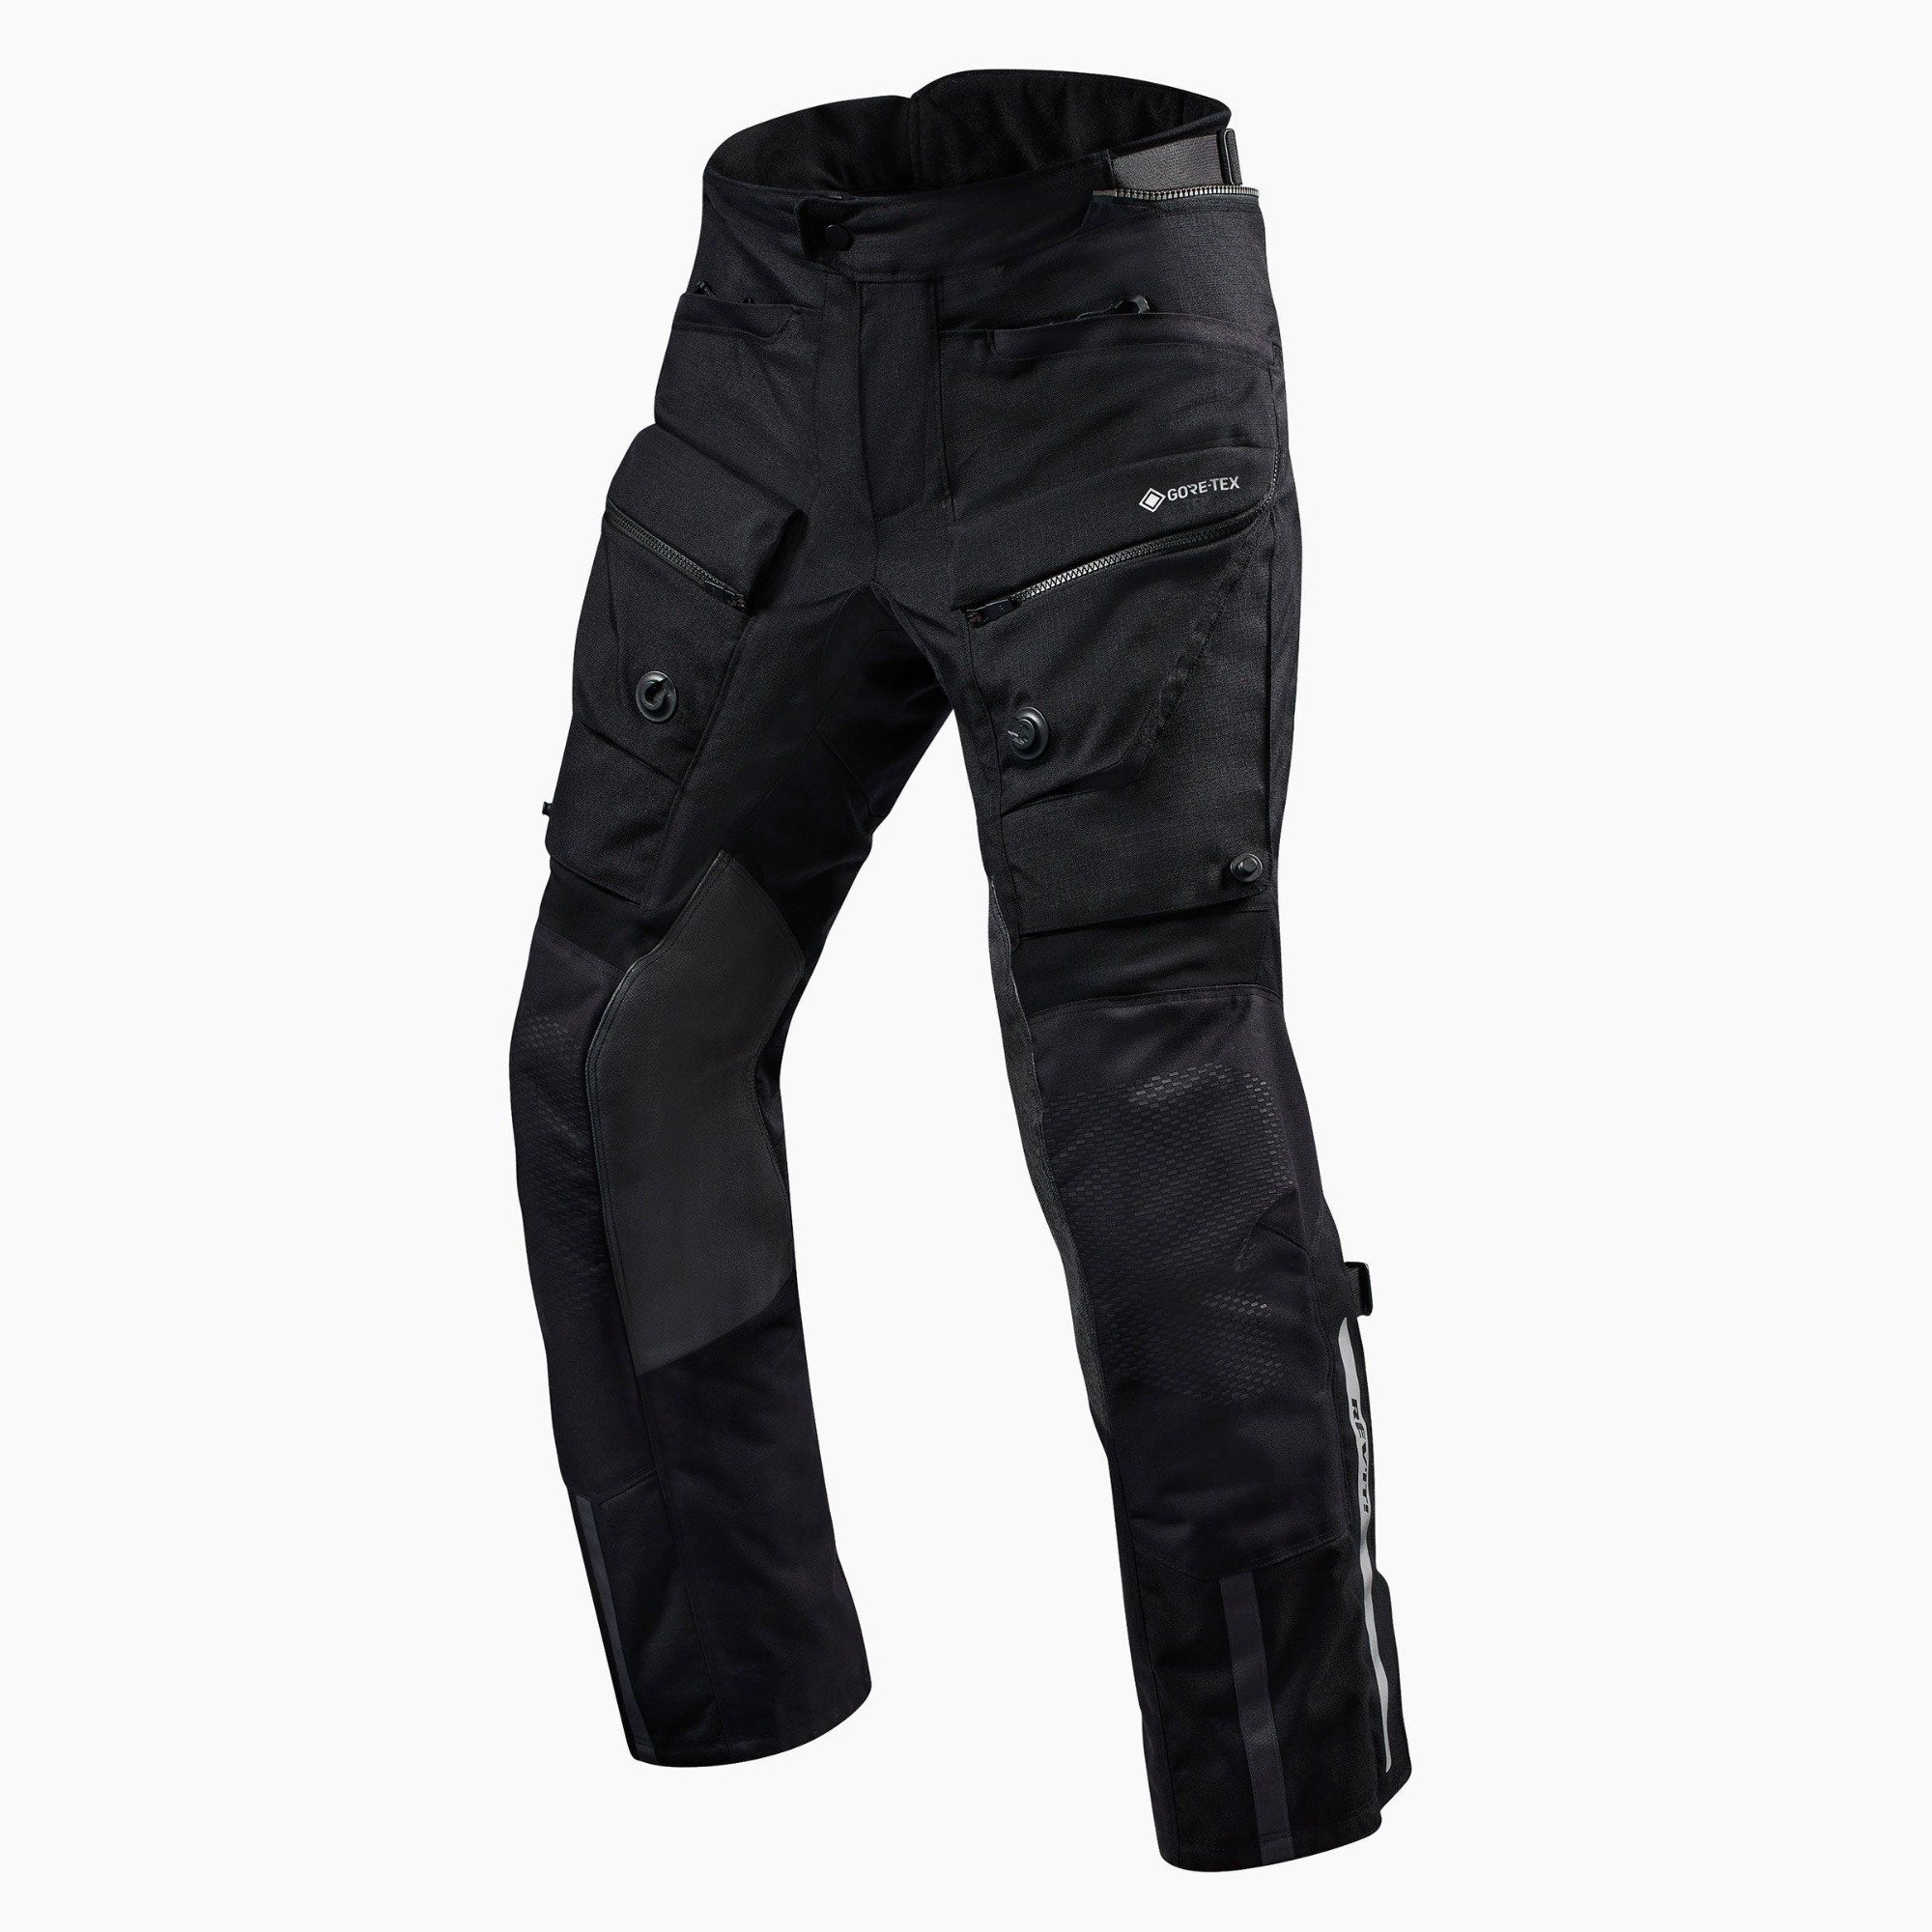 Image of REV'IT! Trousers Defender 3 GTX Black Standard Motorcycle Pants Size S EN